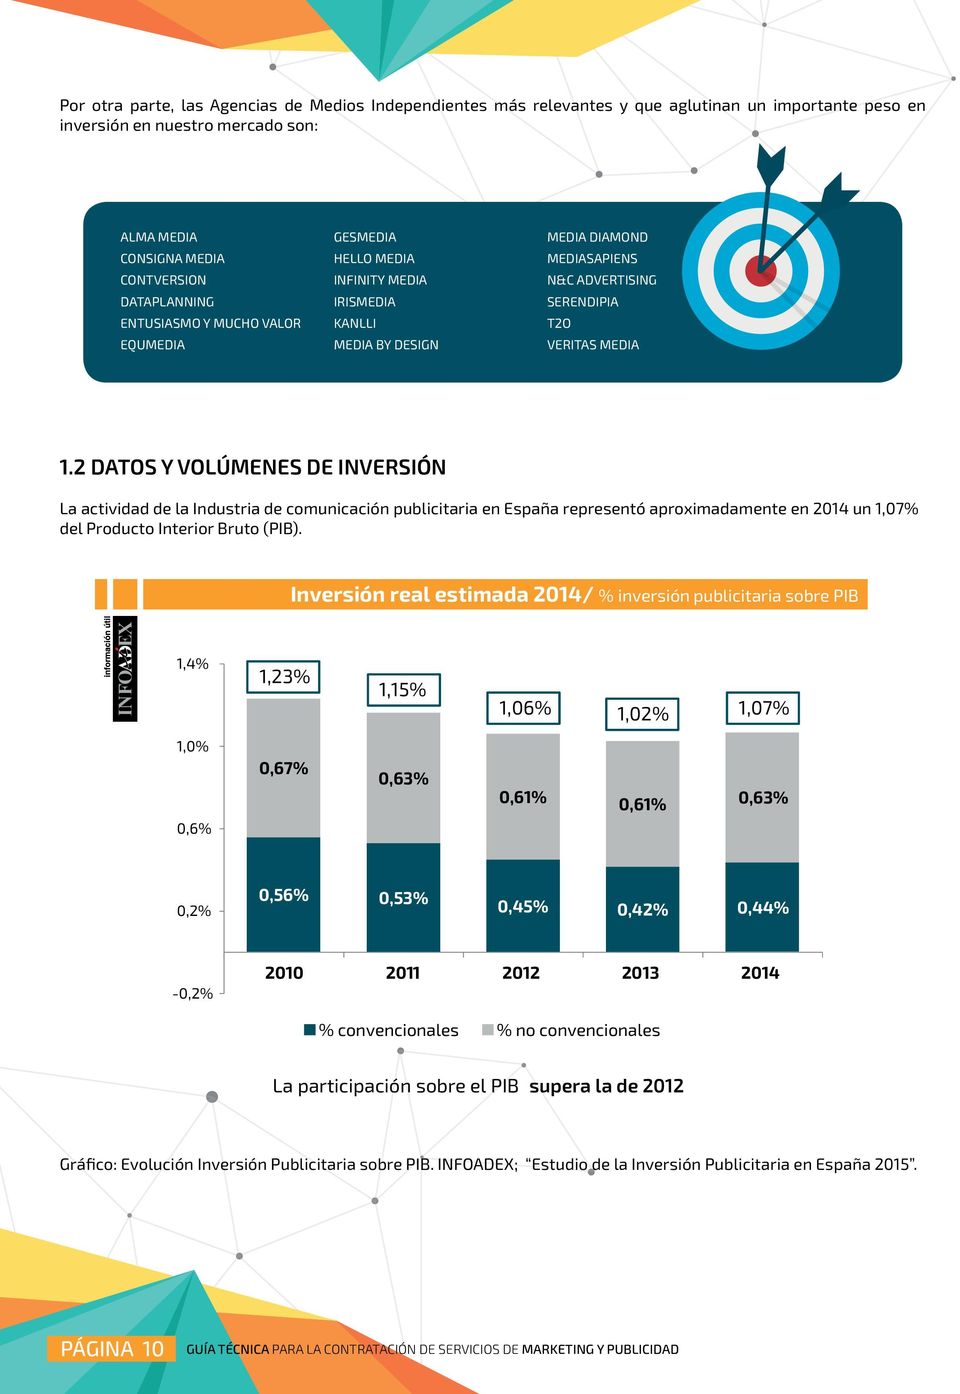 2 DATOS Y VOLÚMENES DE INVERSIÓN La actividad de la Industria de comunicación publicitaria en España representó aproximadamente en 2014 un 1,07% del Producto Interior Bruto (PIB).